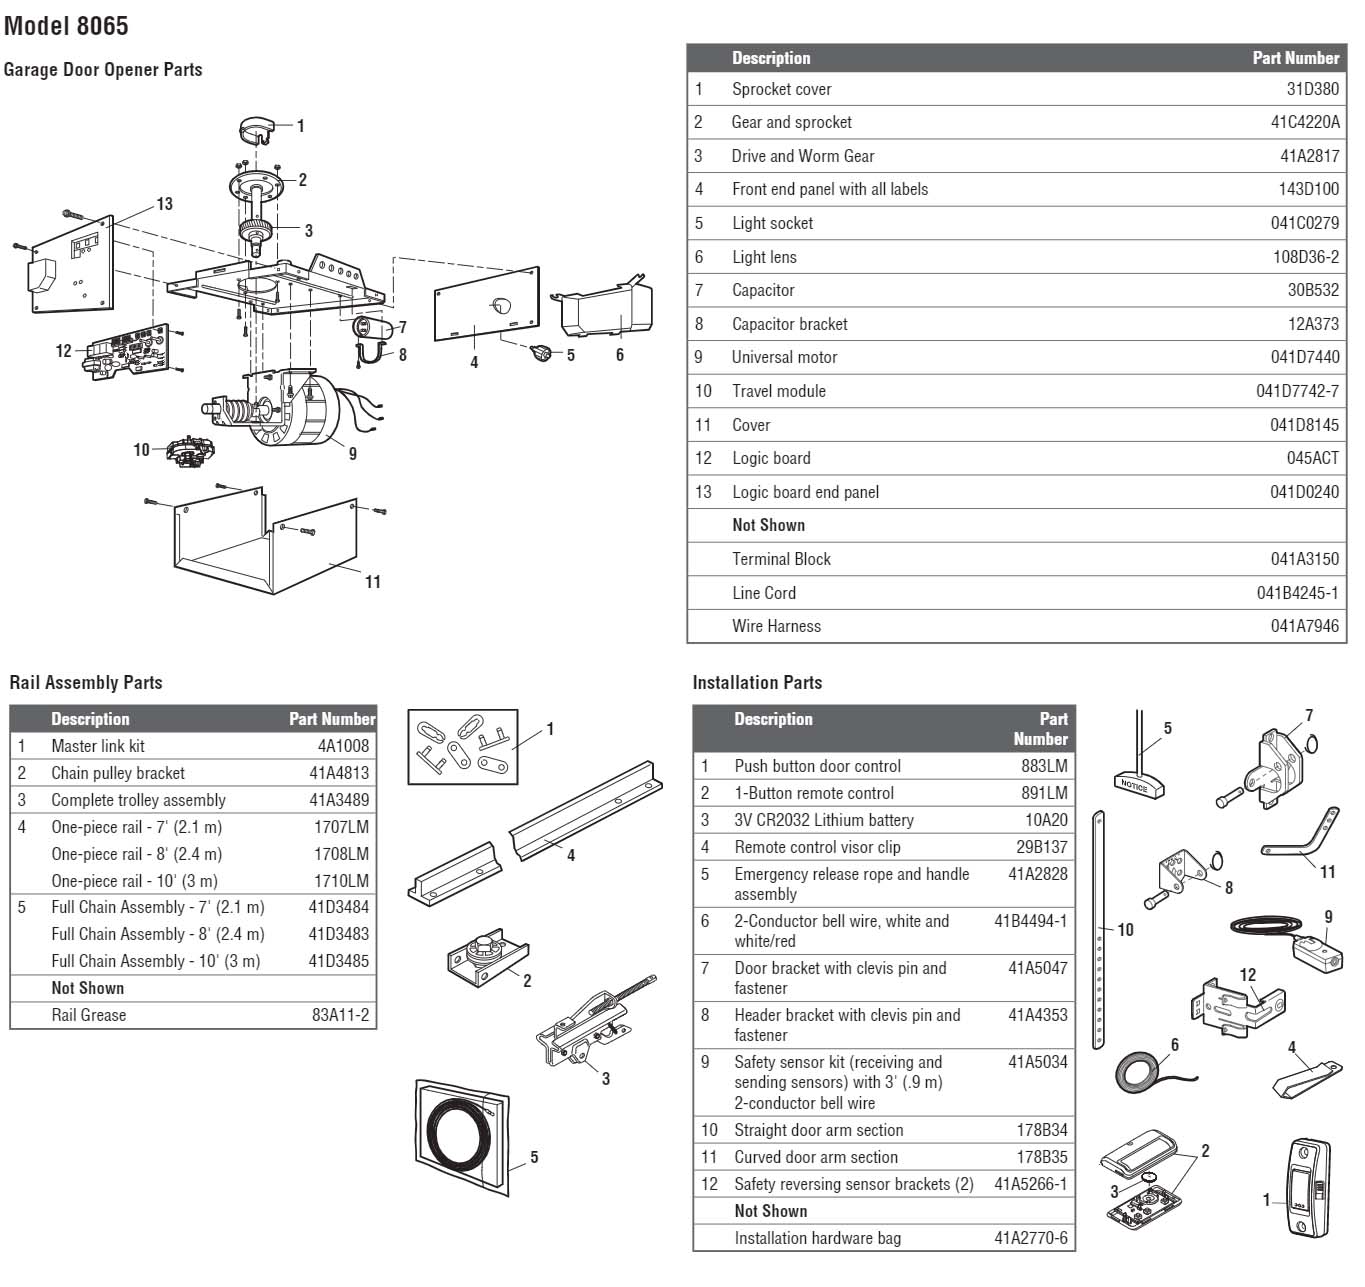 LiftMaster 8065 Garage Door Opener Parts Diagram and List